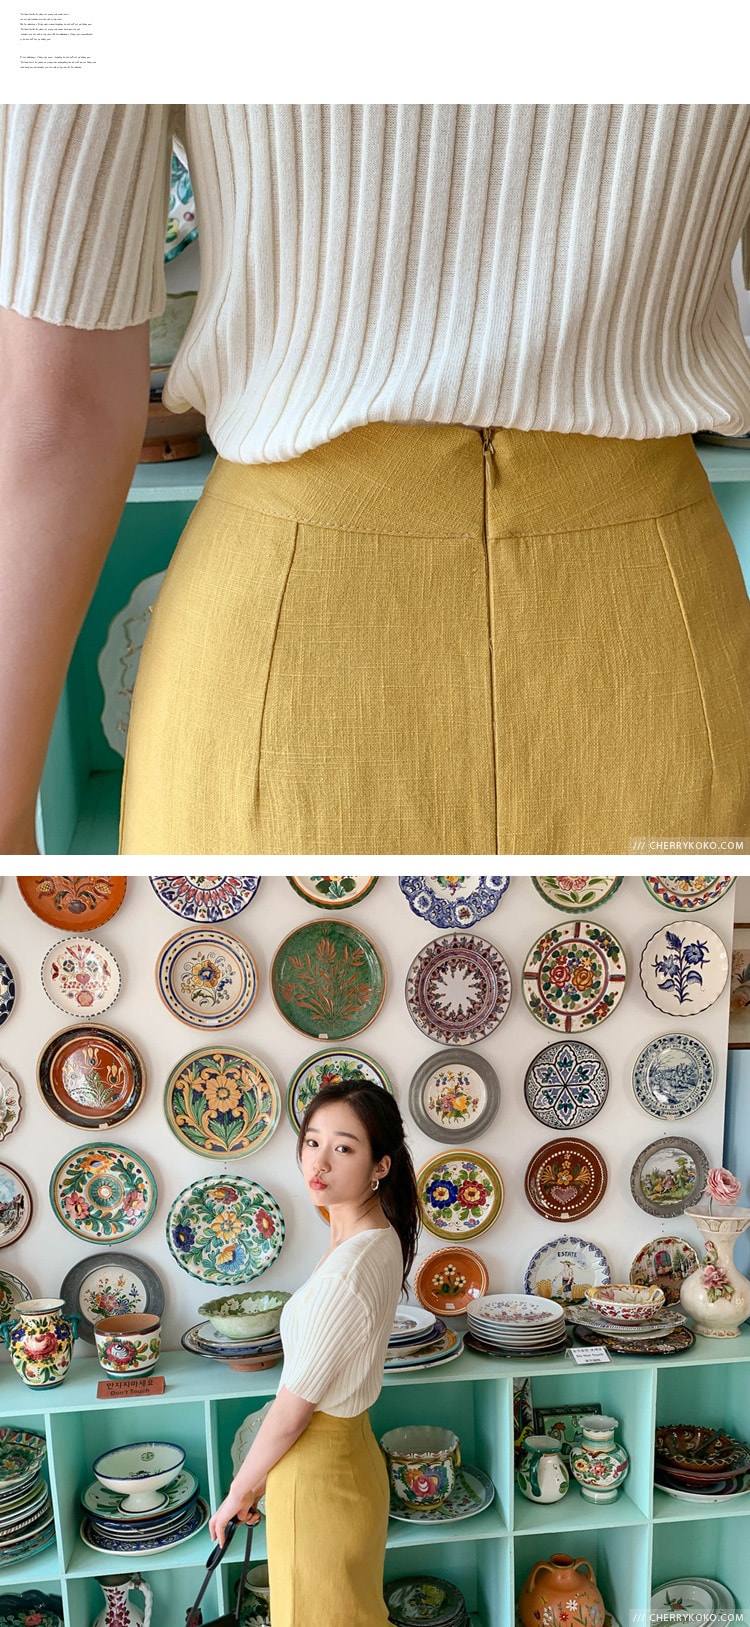 【韩国直邮】CHERRYKOKO 直筒设计修身高腰纯色长裙 黄色 s